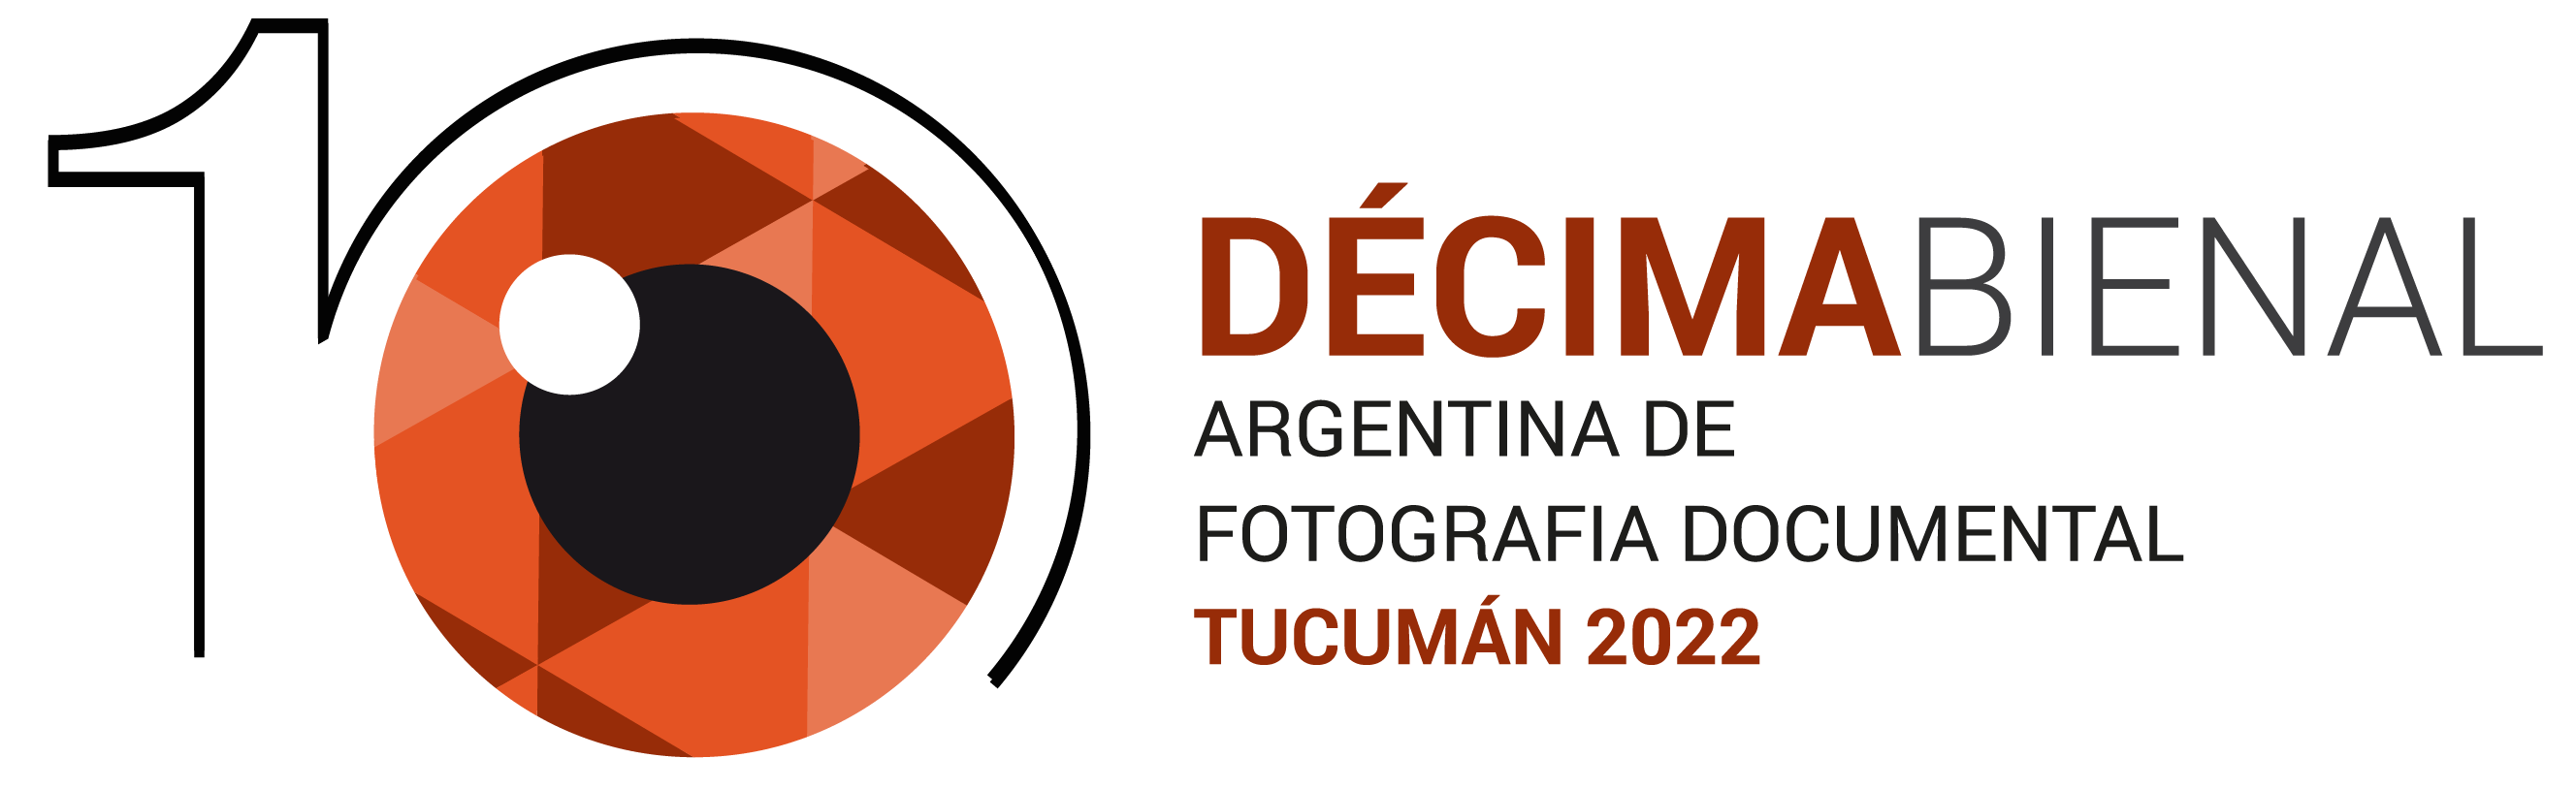 Bienal Argentina de Fotografía Documental